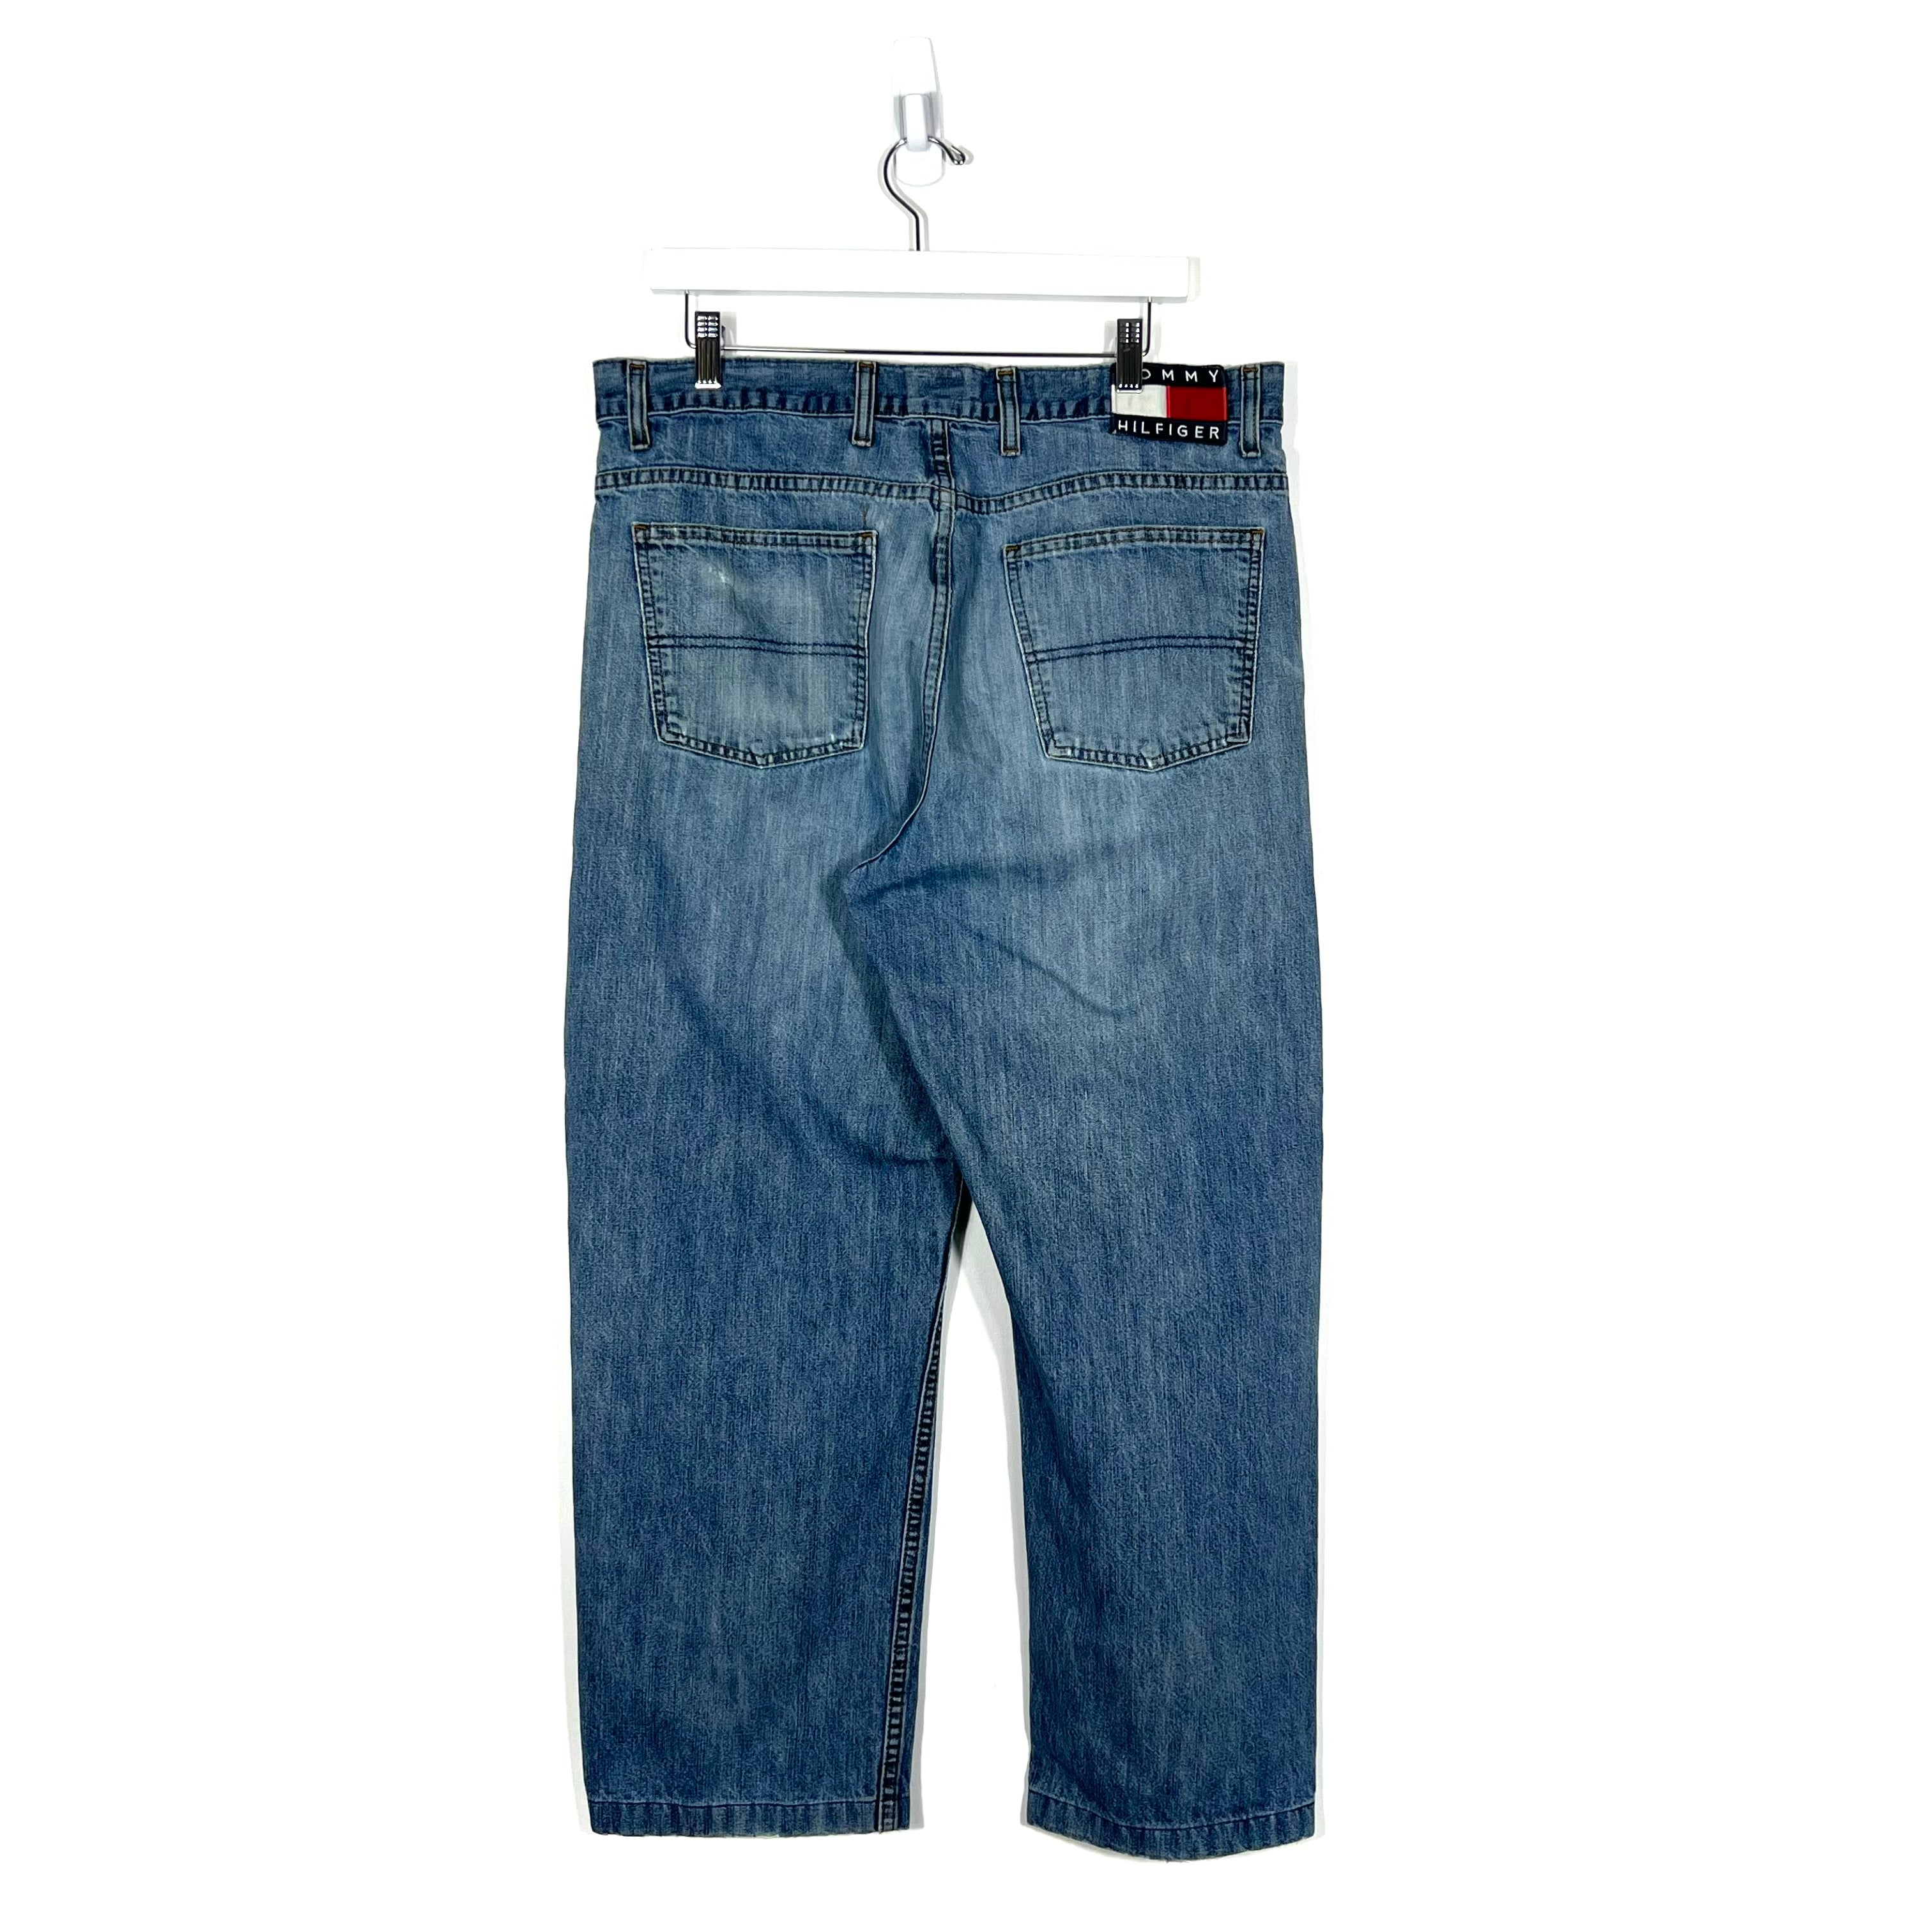 Vintage Tommy Hilfiger Jeans - Men's 36/32